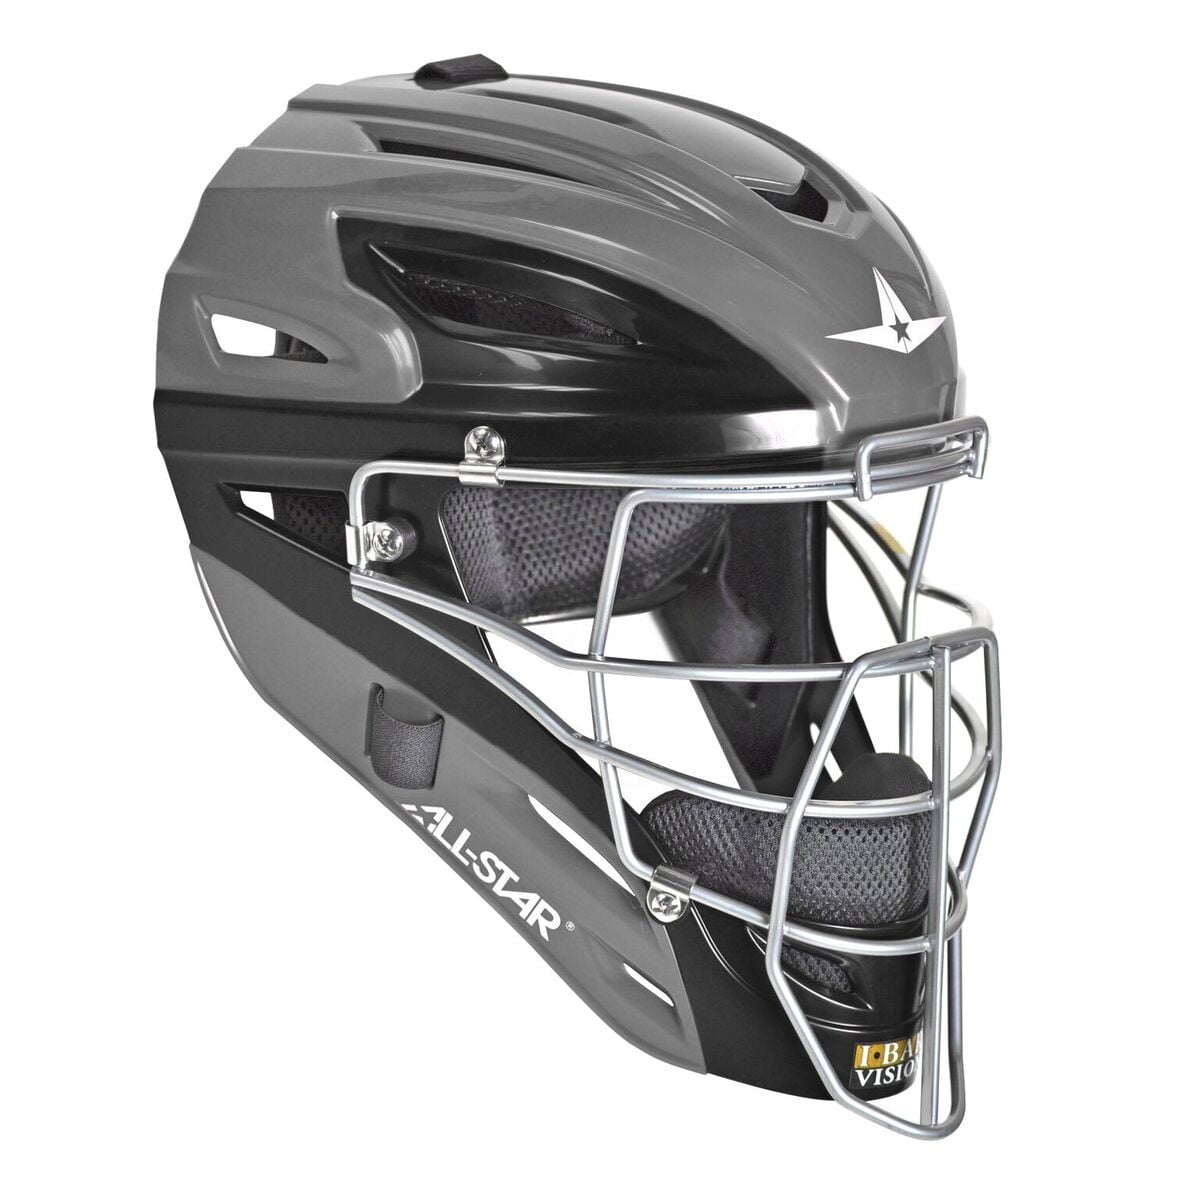 All-Star System Seven Adult Baseball Catcher's Helmet Graphite 